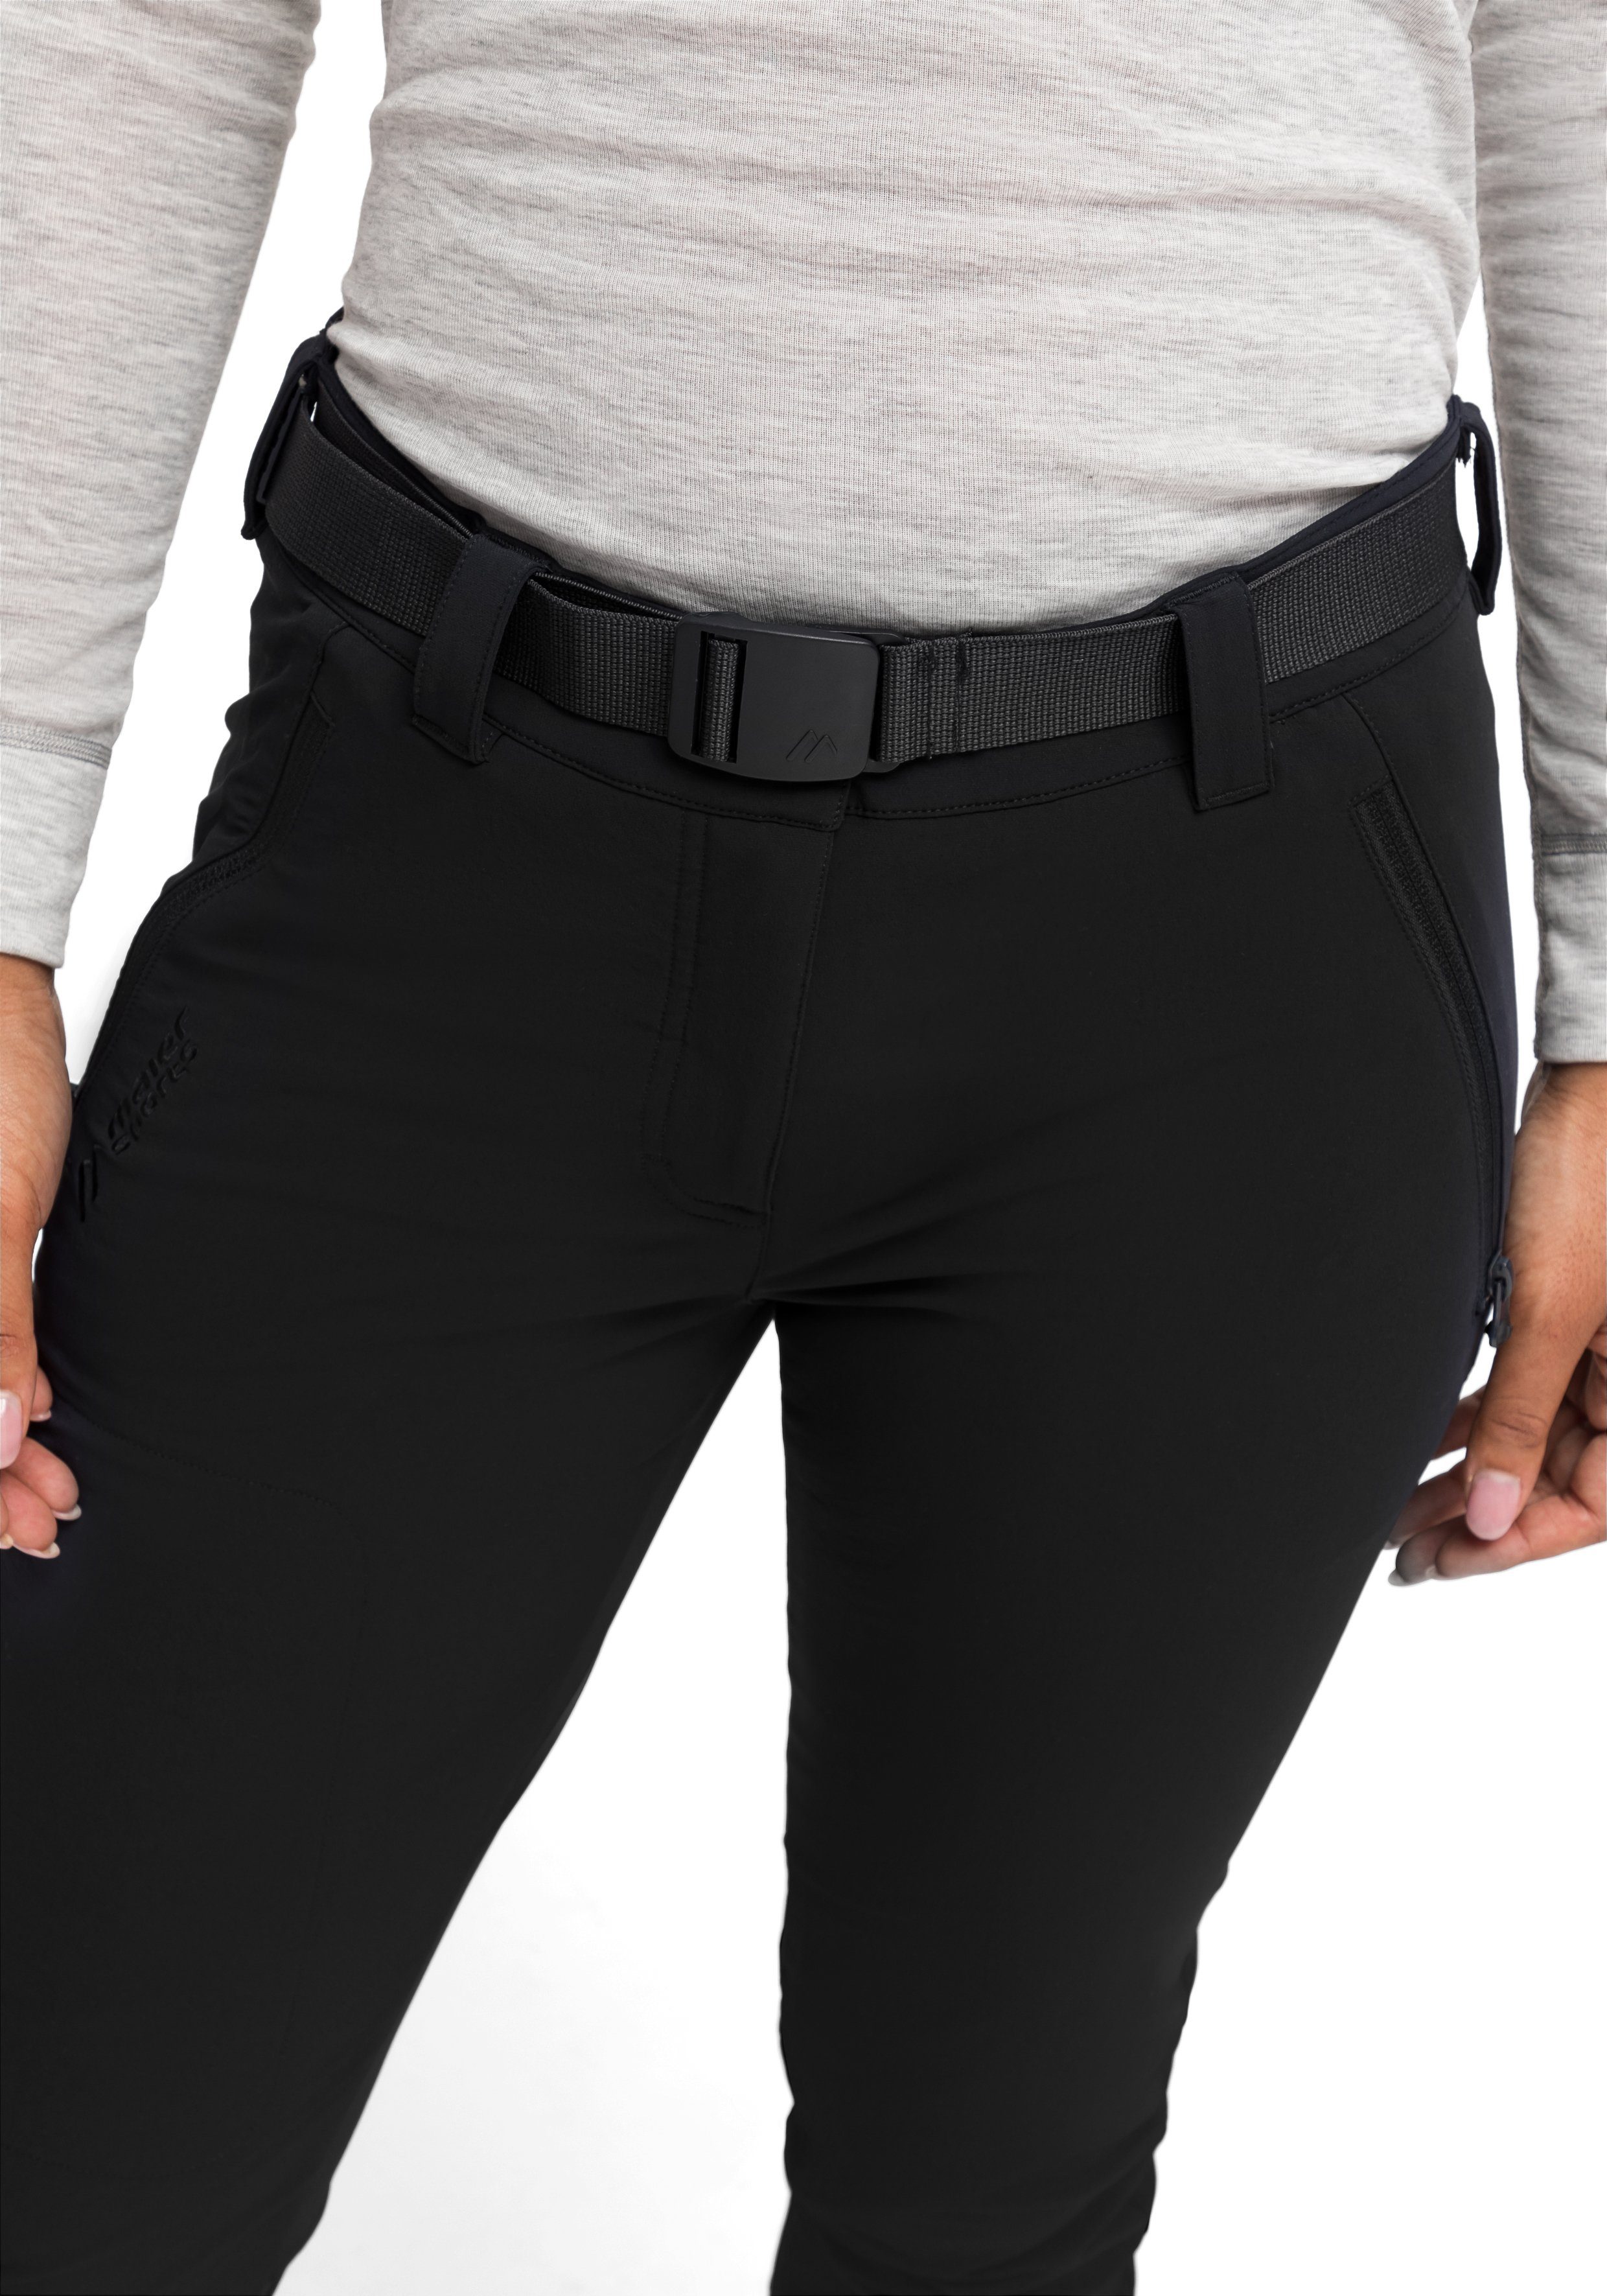 Funktionshose Slimfit, elastisch, Maier Trekkinghose, schwarz Lana Sports schnelltrocknend slim